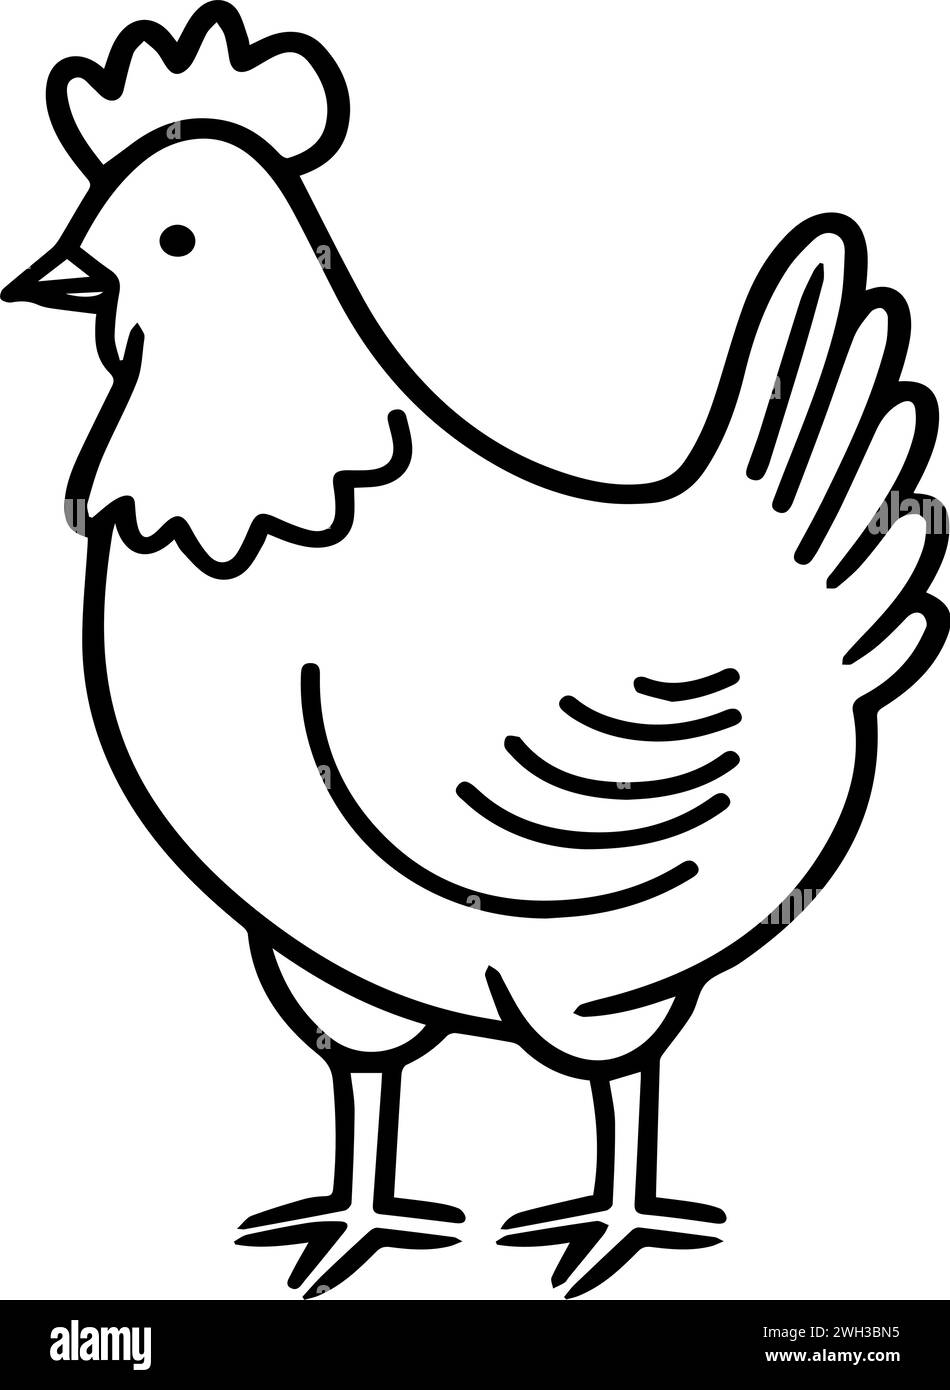 Eine vereinfachte schwarz-weiße Linienzeichnung eines Huhns vor einem transparenten weißen Hintergrund - Seitenansichtswinkel Stock Vektor